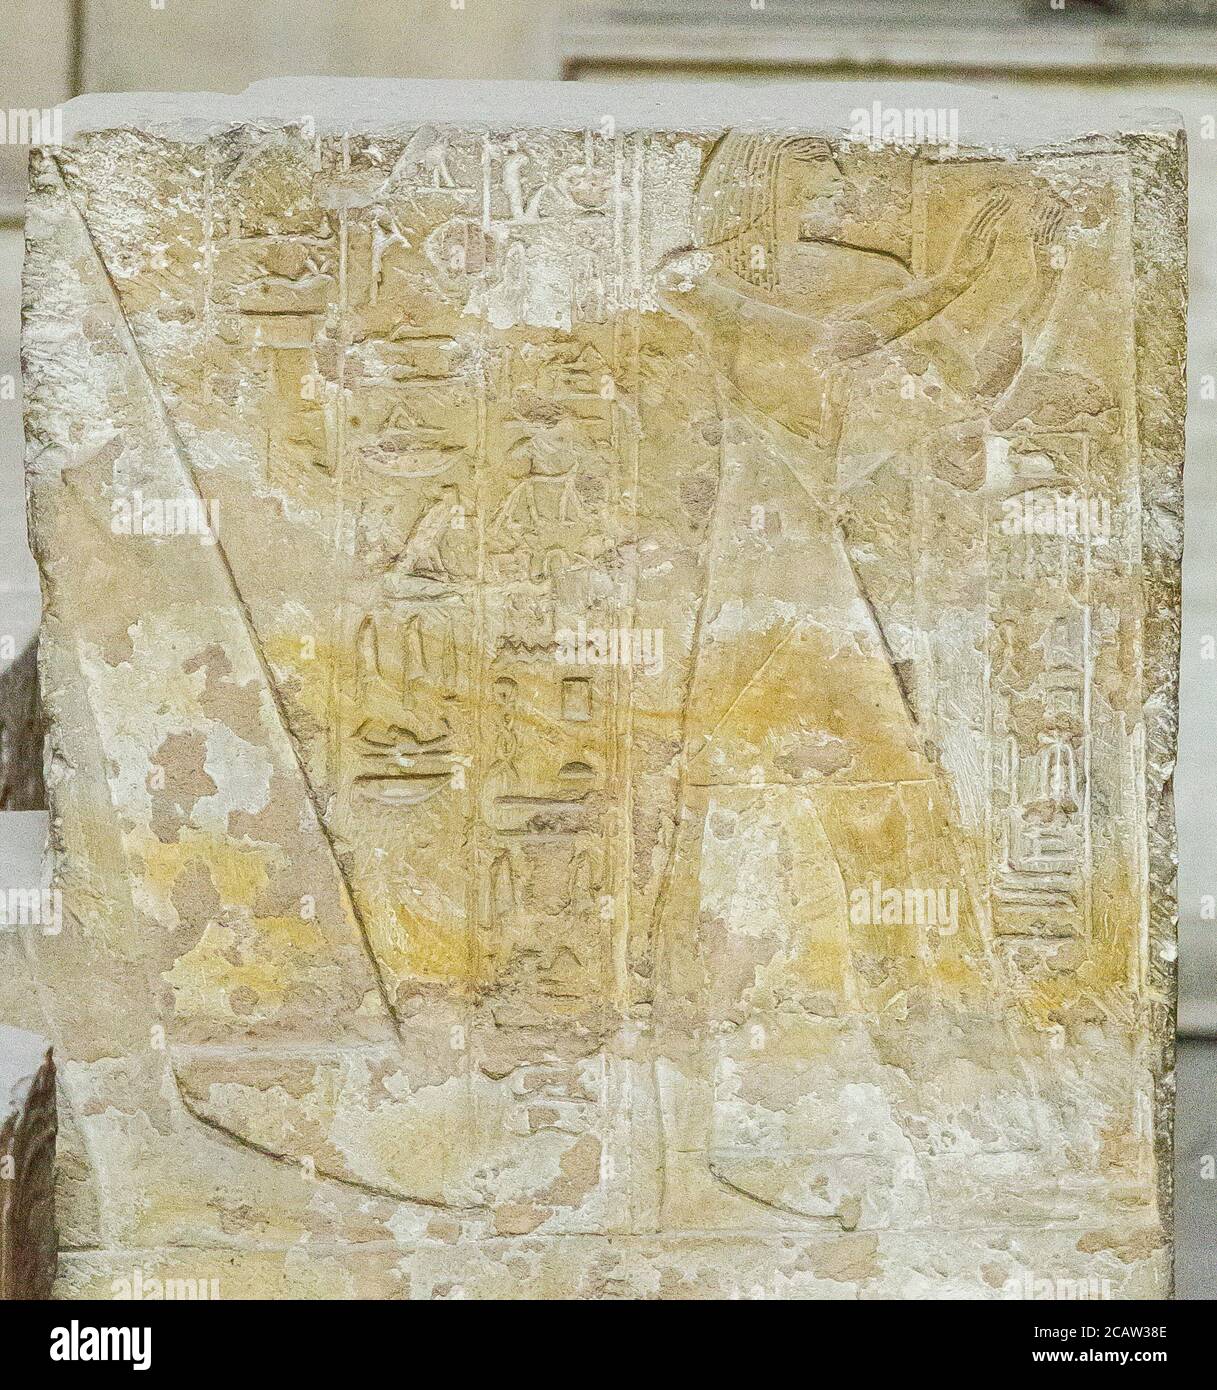 Égypte, le Caire, Musée égyptien, partie du tombeau de Mès (ou Mose), de Saqqara. Ce tombeau est très célèbre pour son "texte juridique". Banque D'Images